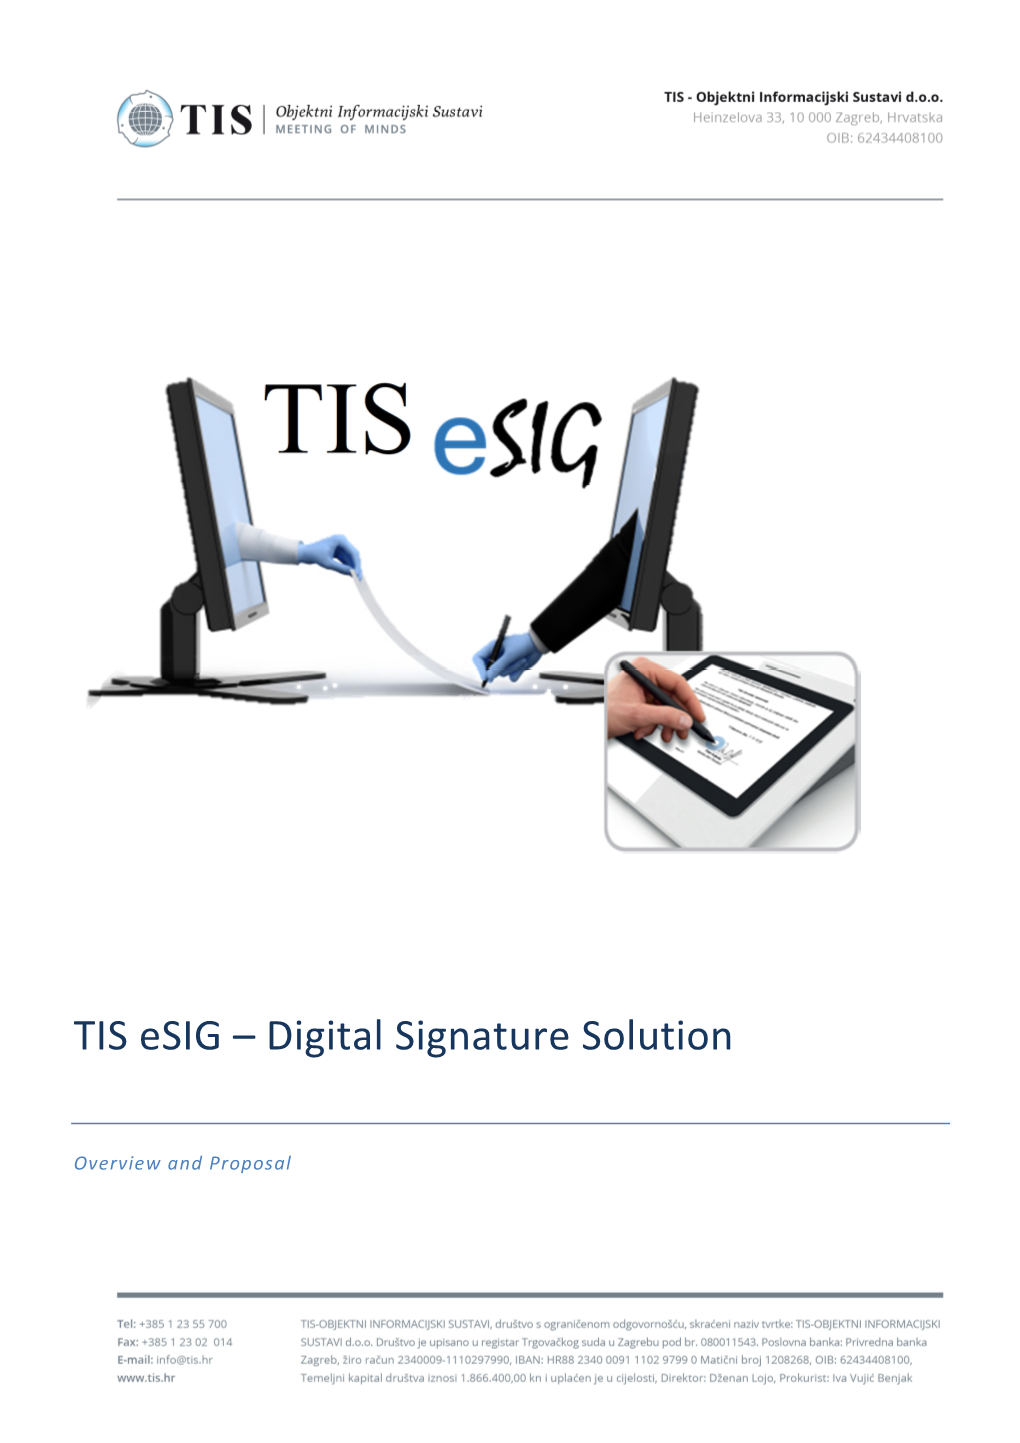 TIS Esig – Digital Signature Solution